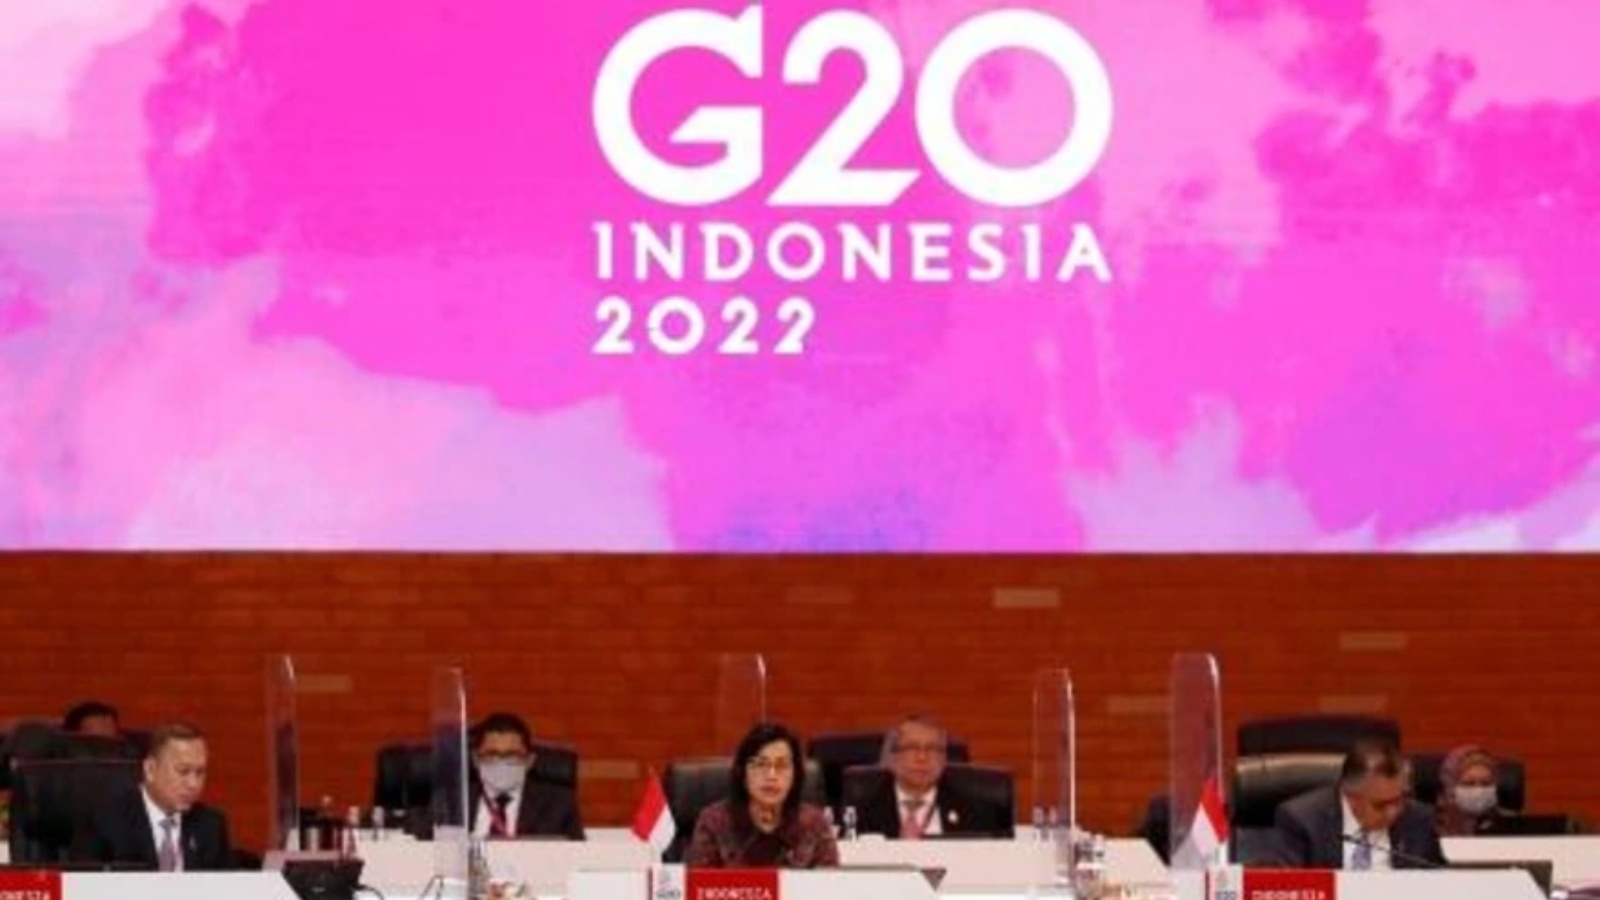 وزيرة المال الإندونيسية سُري مولياني إندراواتي (وسط) تلقي كلمة عند افتتاح اجتماع وزراء المال وحكام المصارف المركزية لدول مجموعة العشرين في نوسا دوا في جزيرة بالي الإندونيسية في 15 يوليو 2022